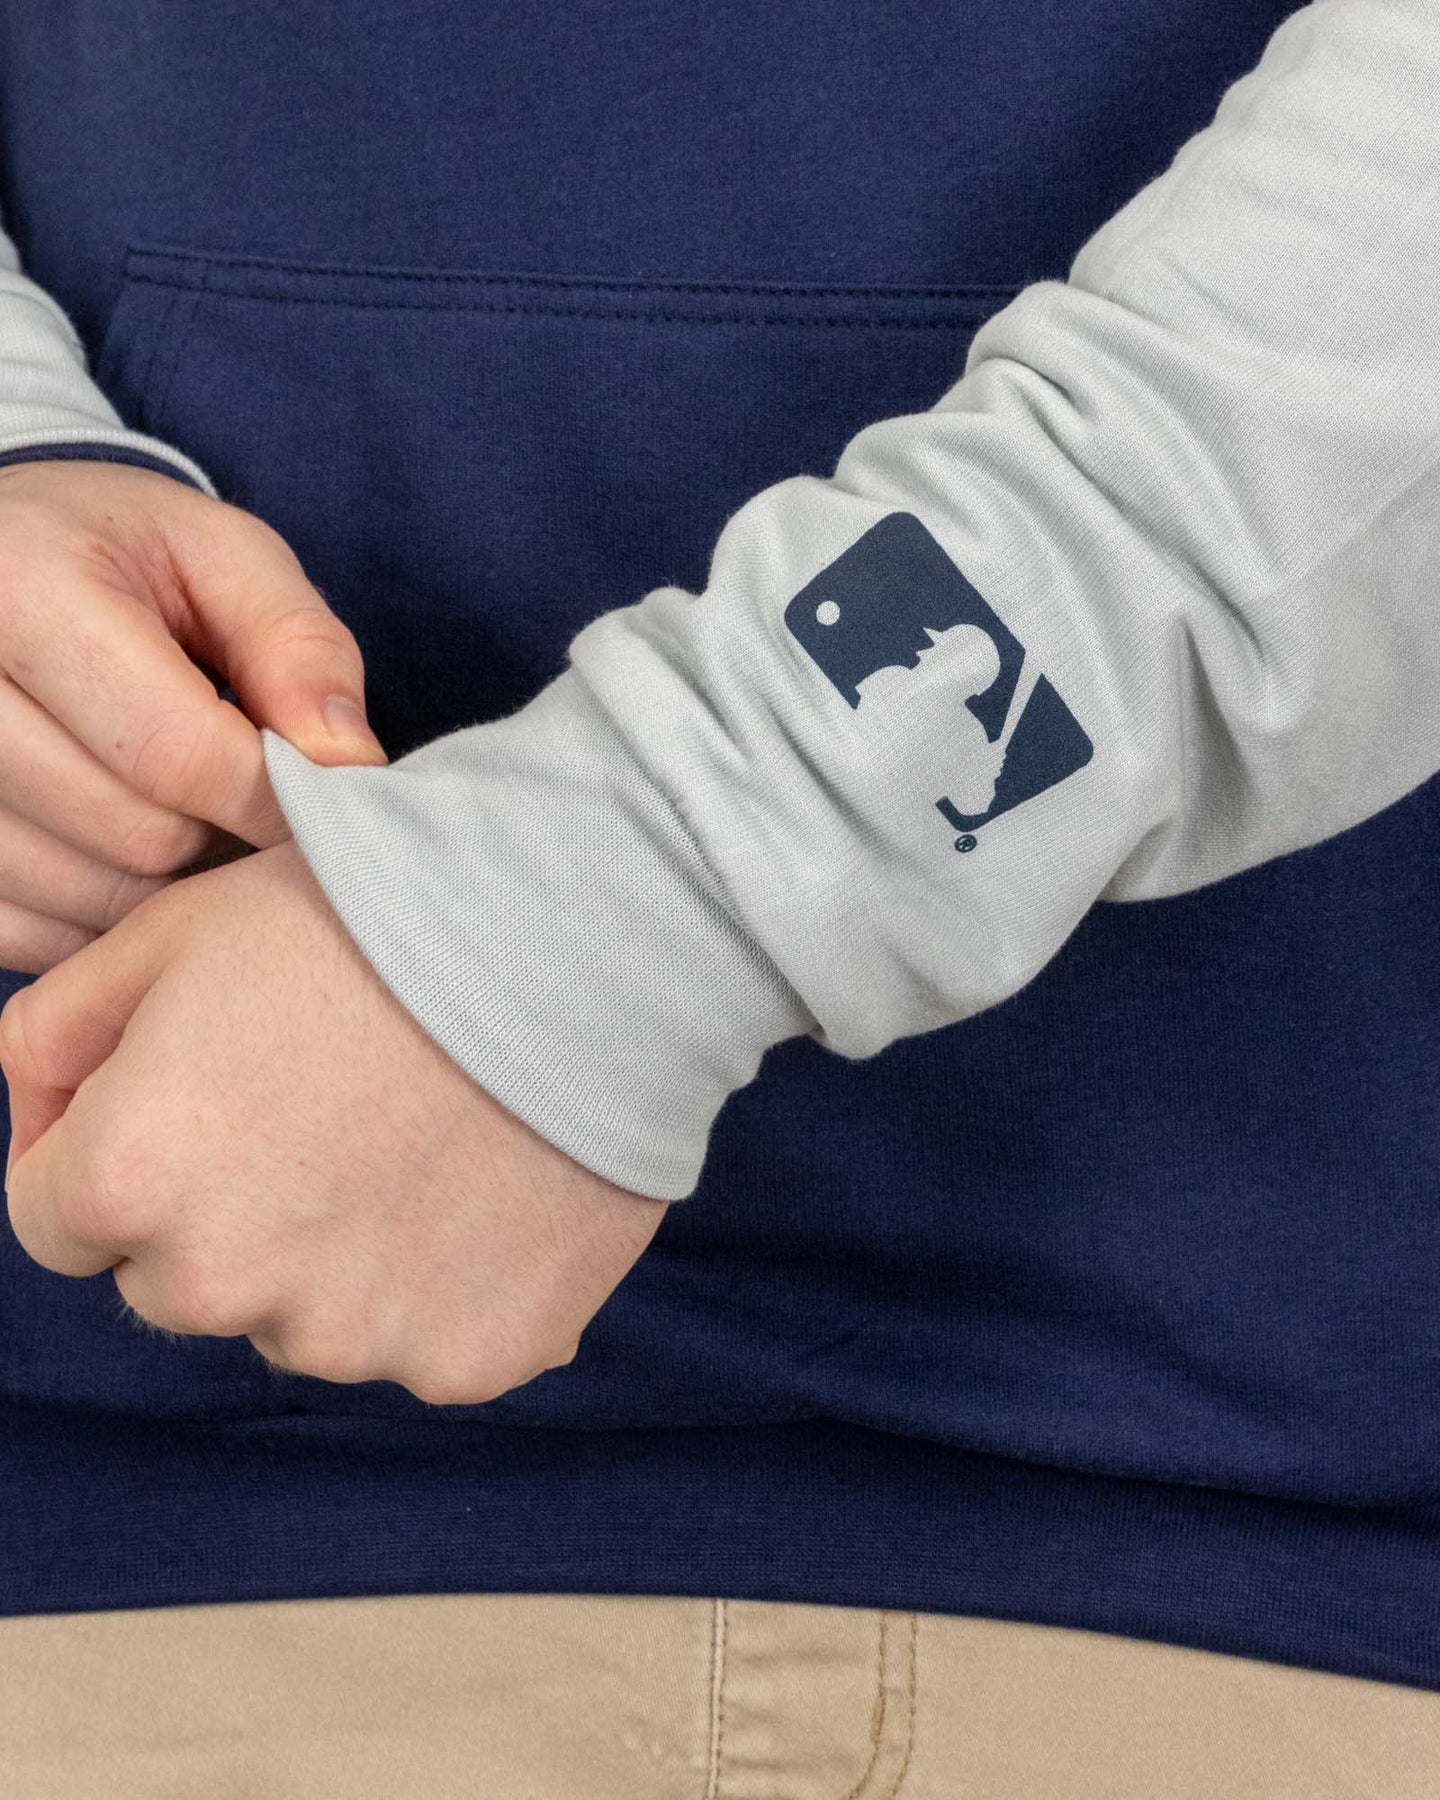 Mlb Milwaukee Brewers Men's Lightweight Bi-blend Hooded Sweatshirt